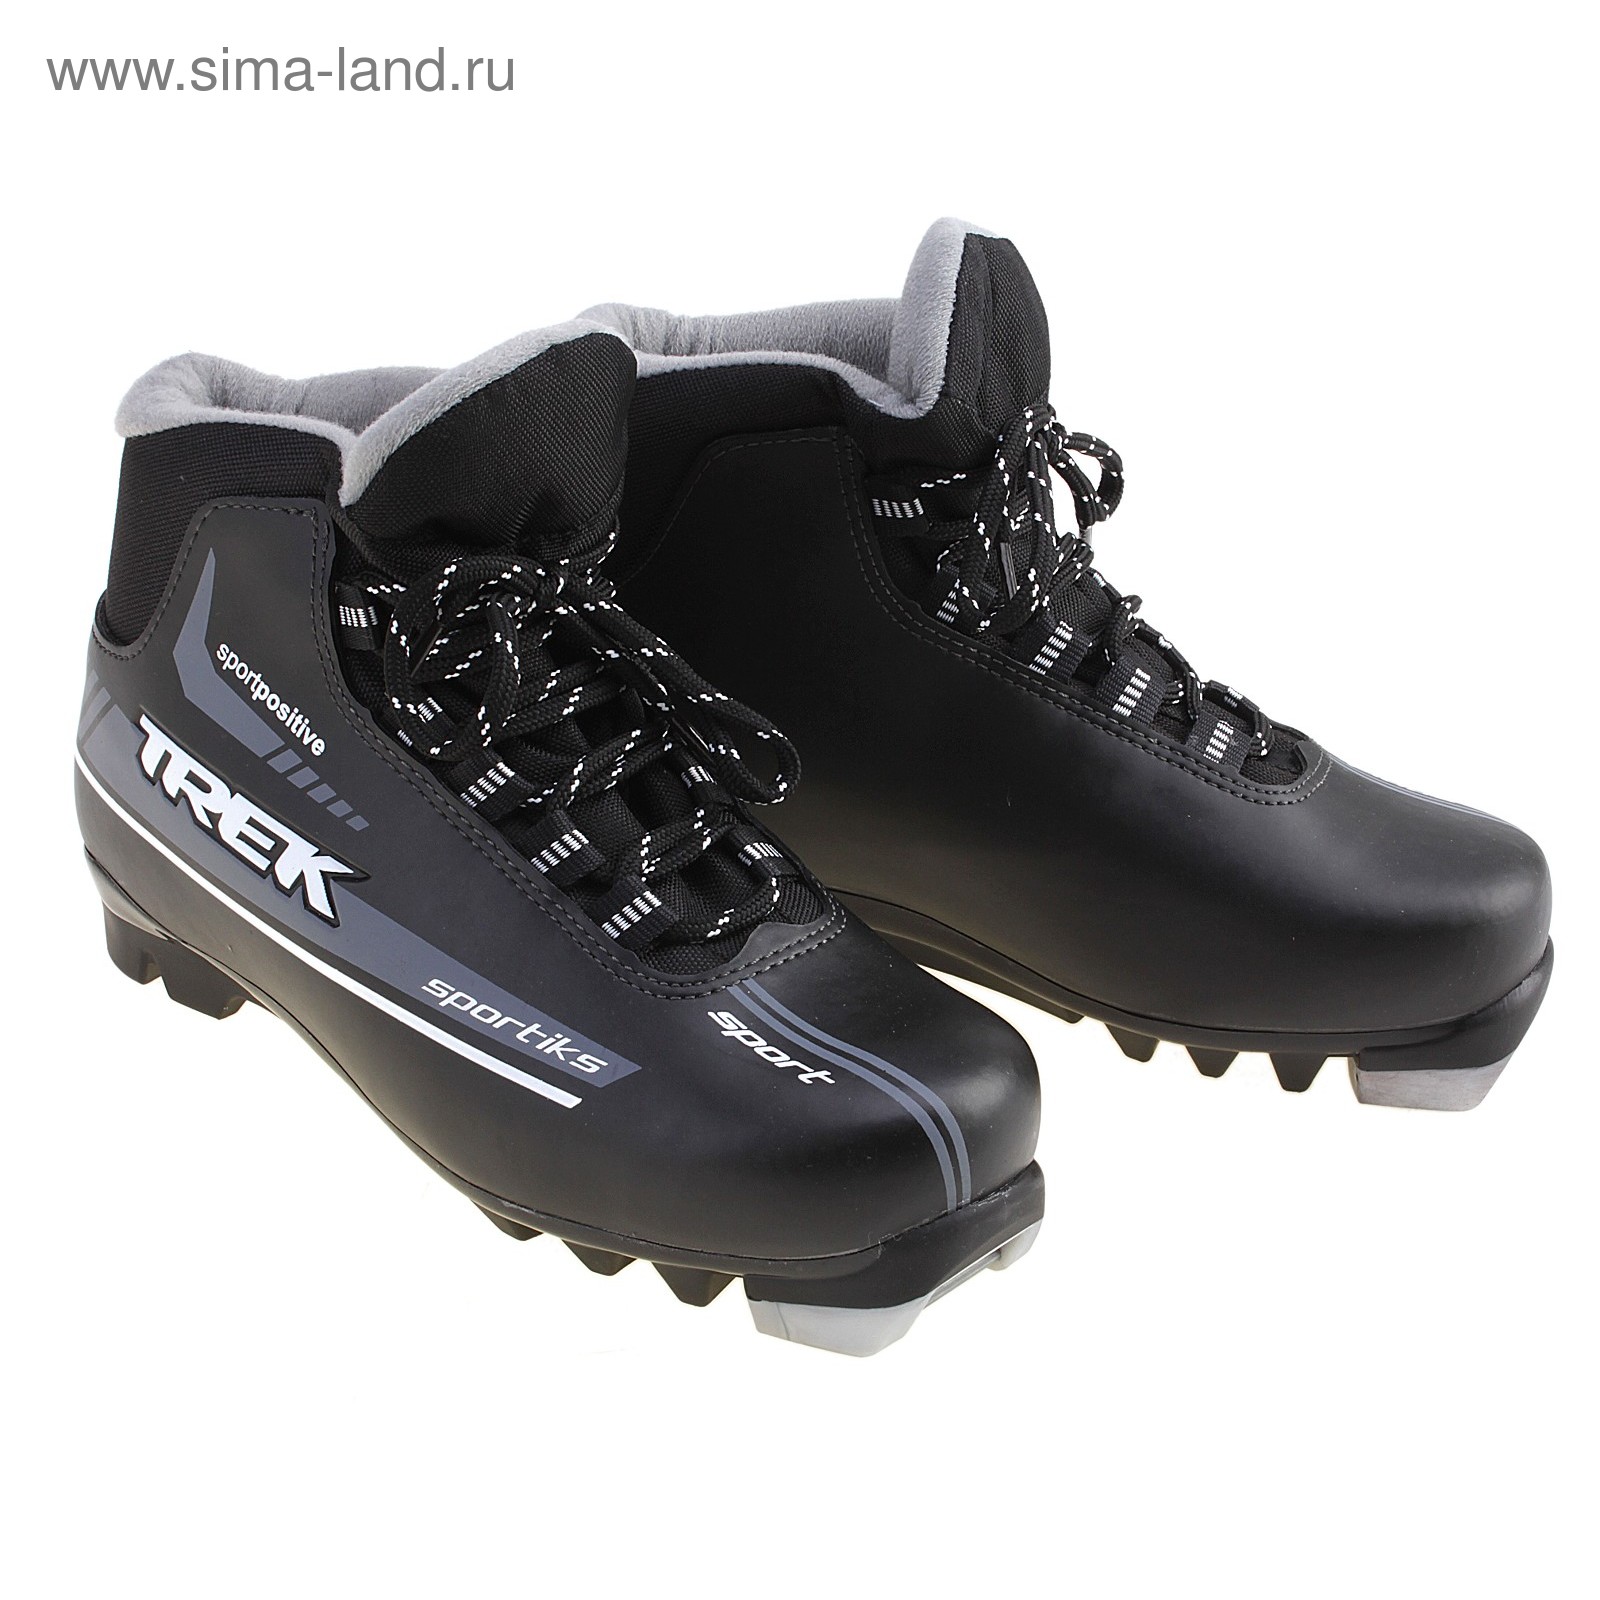 Ботинки лыжные TREK Sportiks NNN ИК, размер 41, цвет: черный